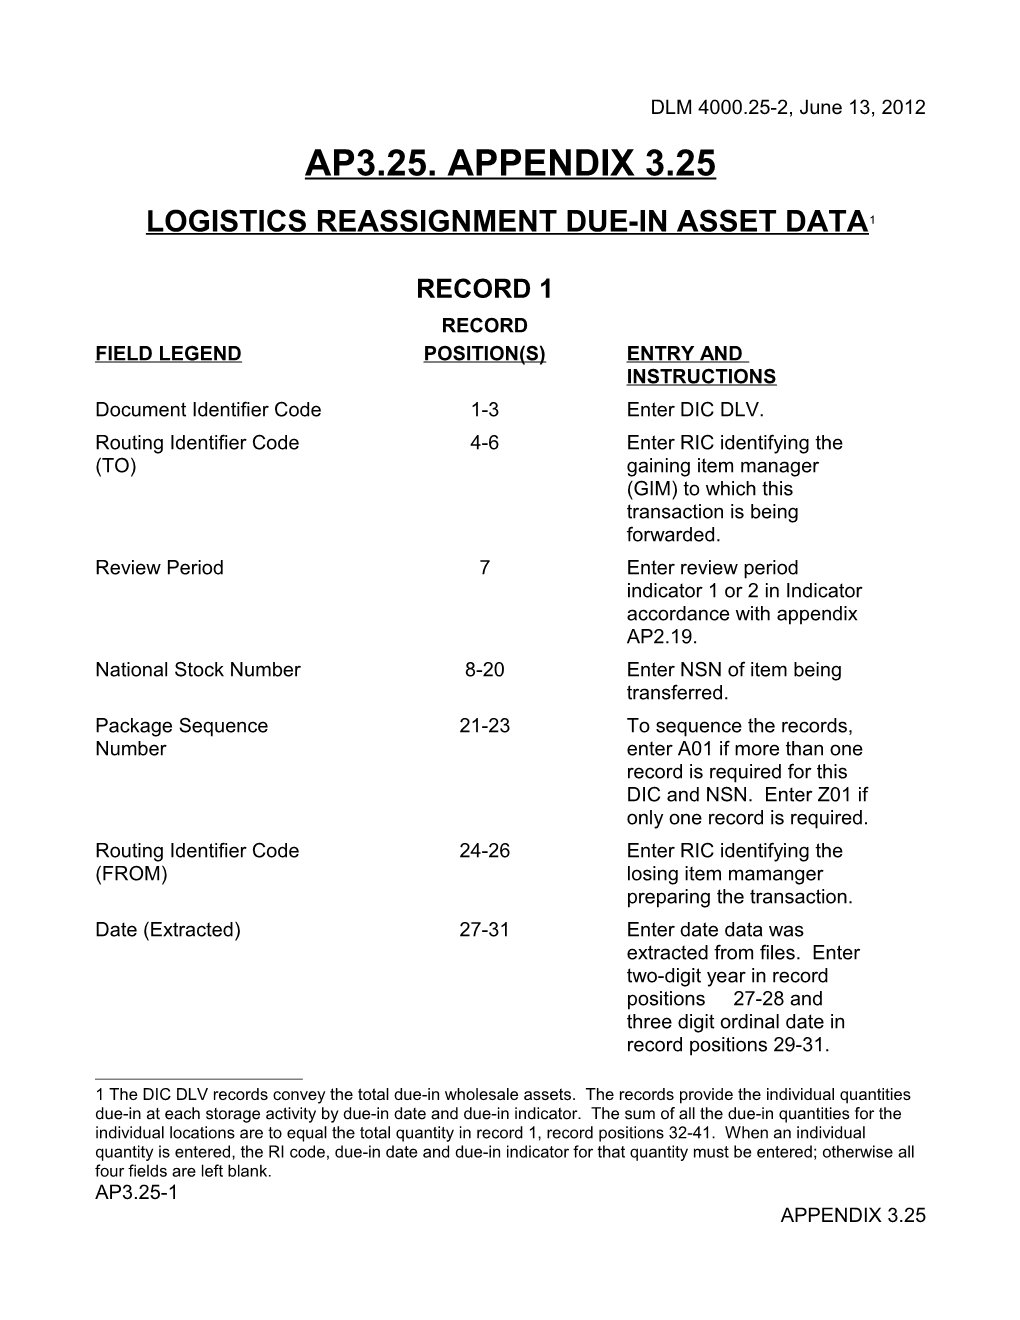 MILSTRAP AP3.25 DLV, Logistics Reassignment Due-In Asset Data